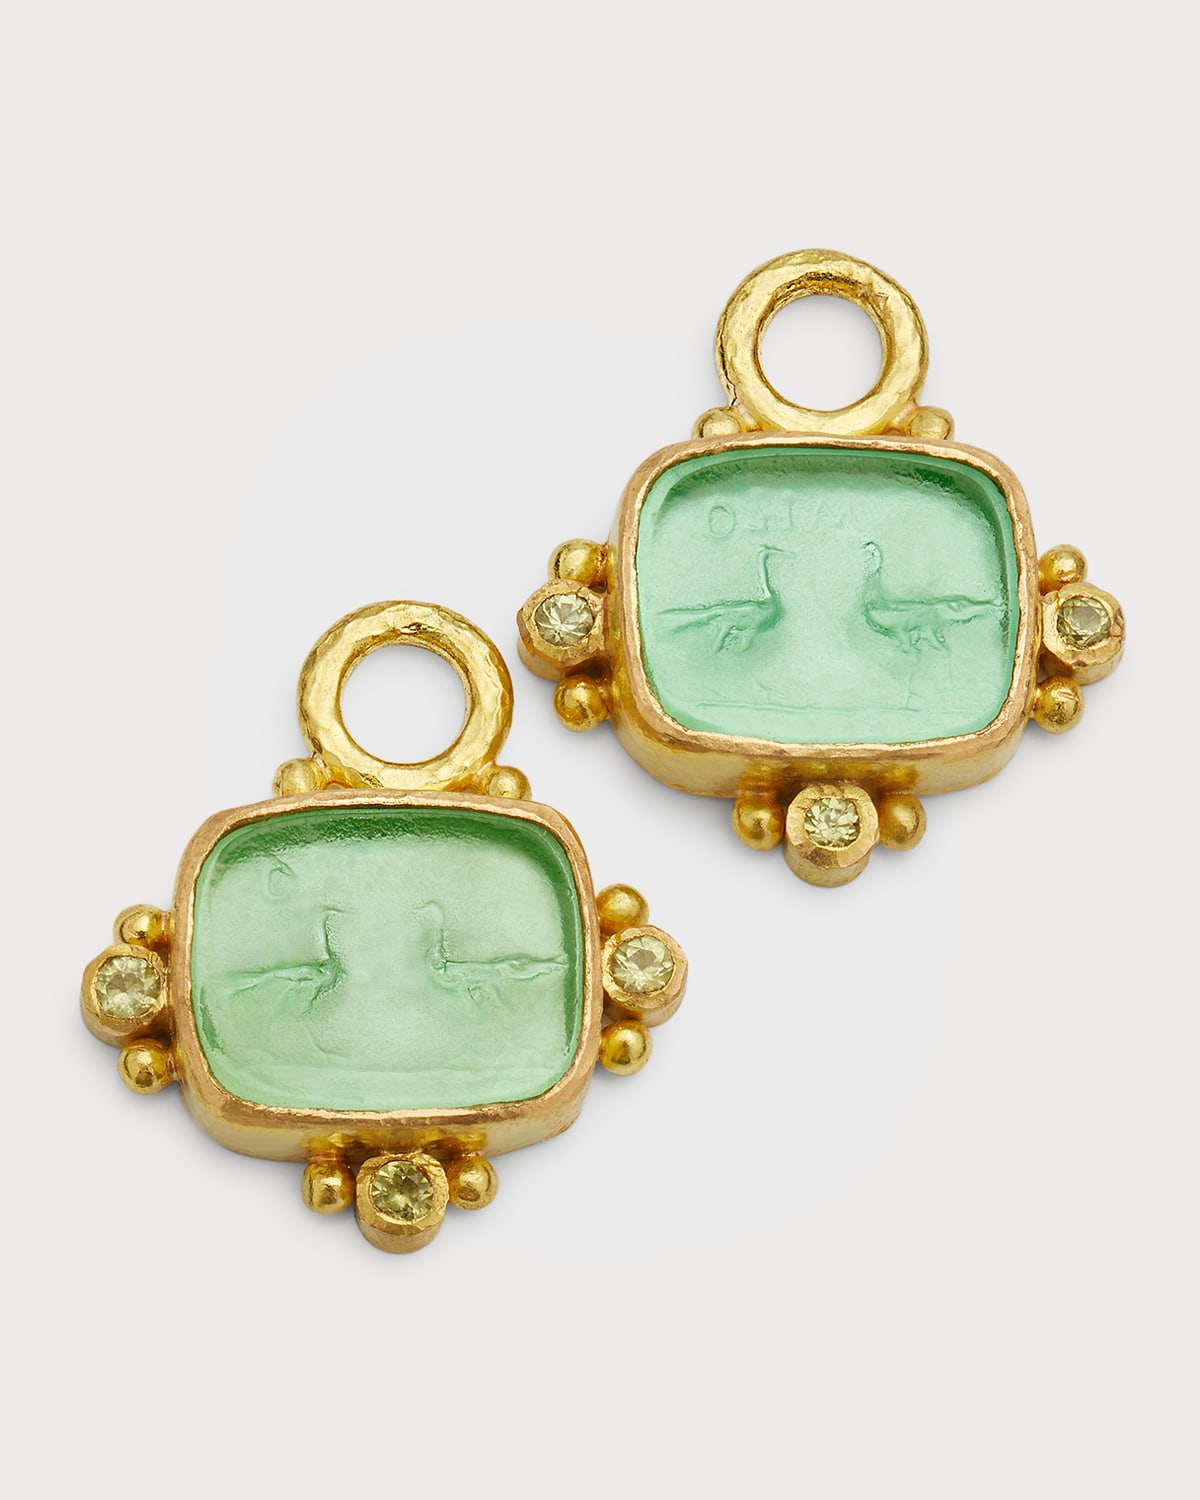 Elizabeth Locke 19K Venetian Glass Intaglio "2 Cranes" Earring Pendants